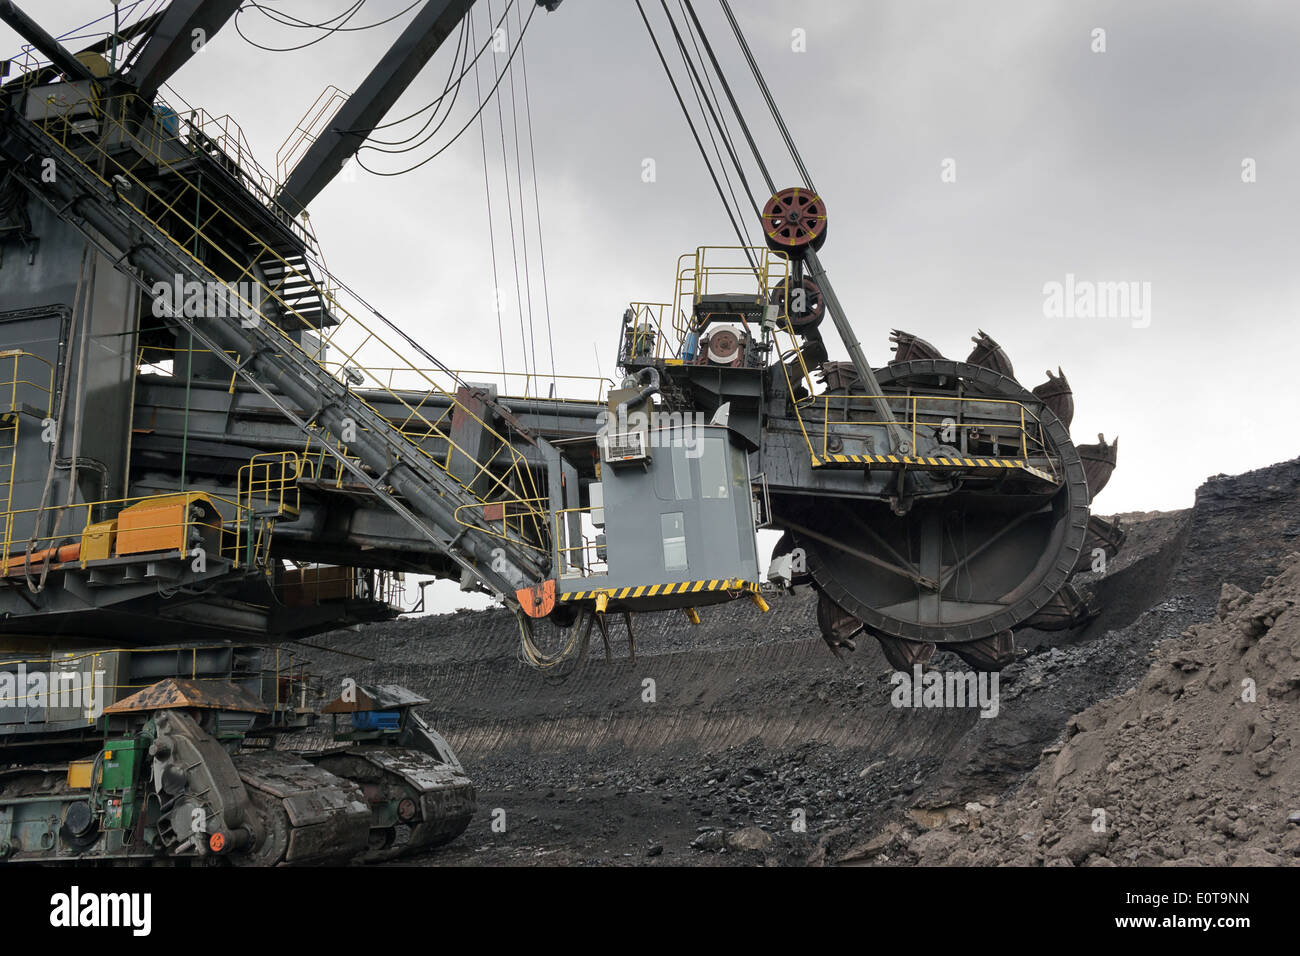 Coal mining in rainy day Stock Photo